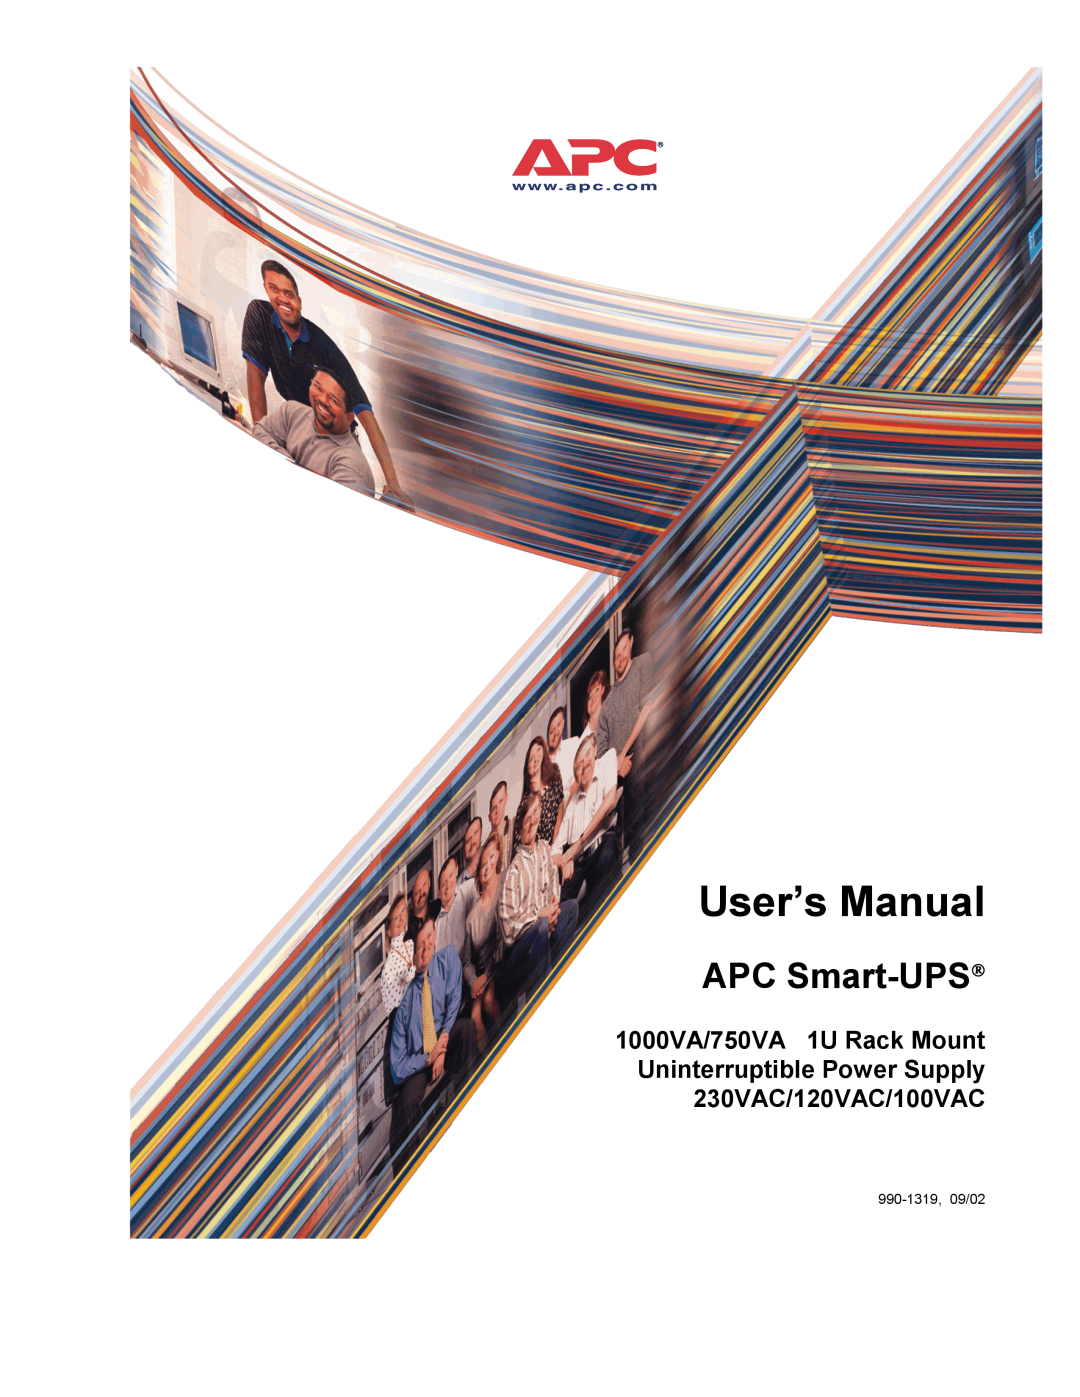 APC SMT 3000I, SMT3000RMI2U, 120VAC manual Safety, Inventory, Installation Guide SMT 2200/3000 VA Input/Output Hardwire Kit 